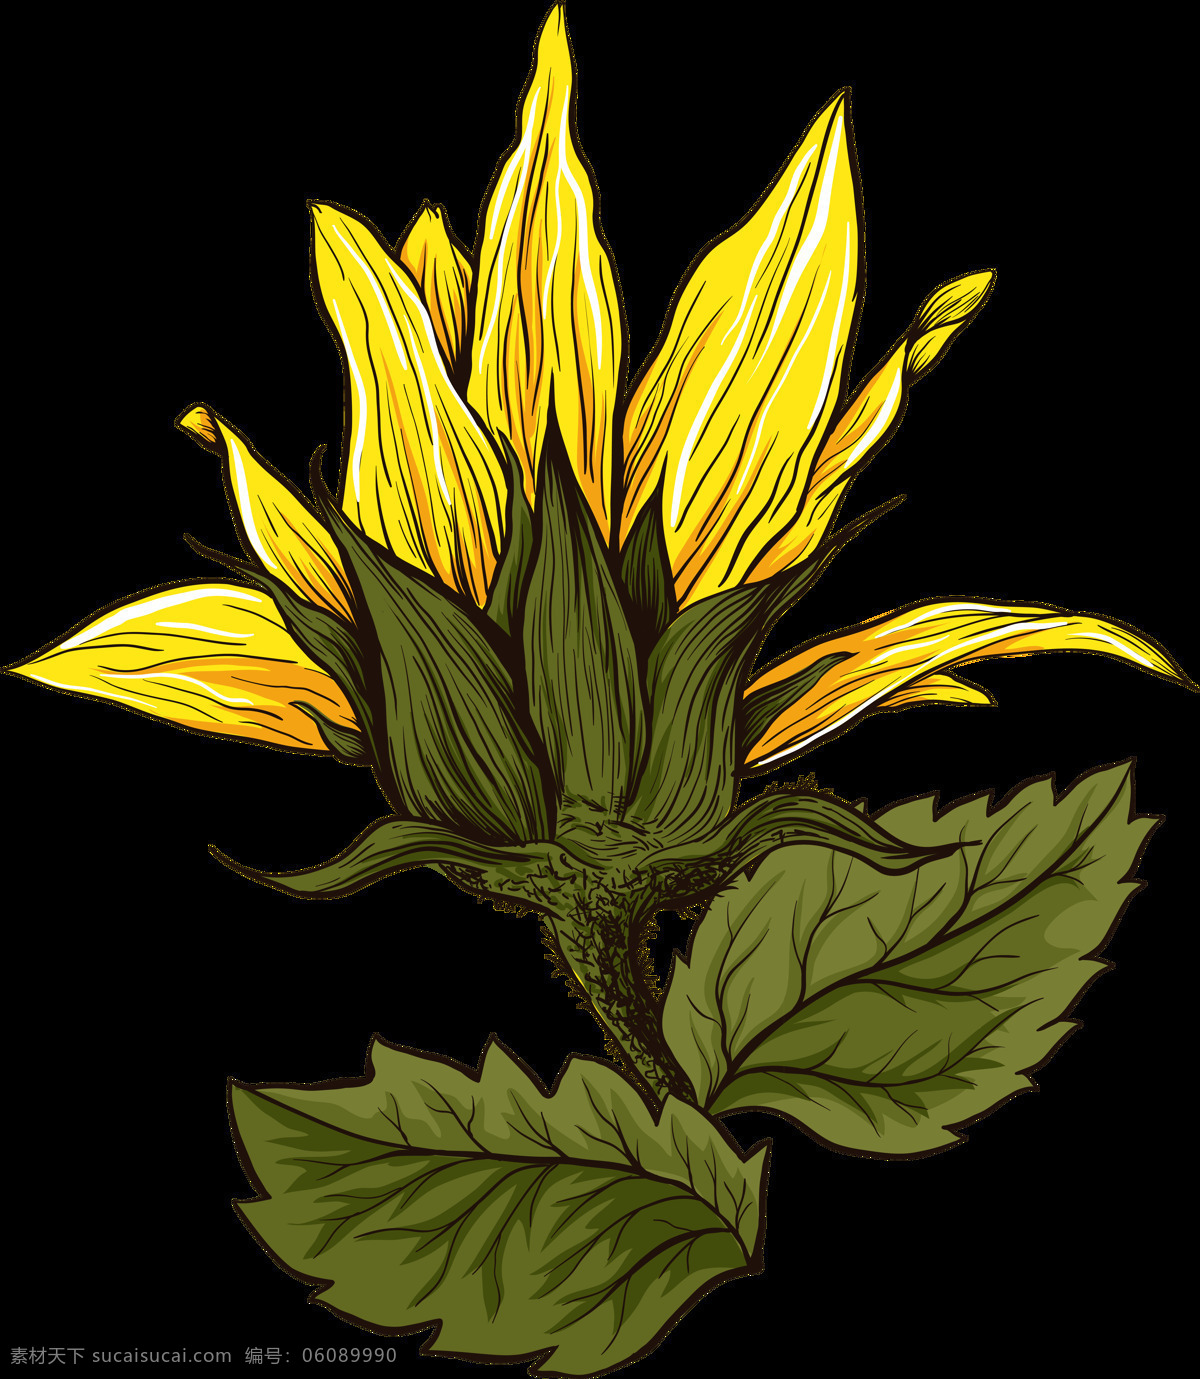 水彩 手绘 植物 向日葵 花朵 涂鸦 创意 插画图案 太阳花 绿叶 文化艺术 绘画书法